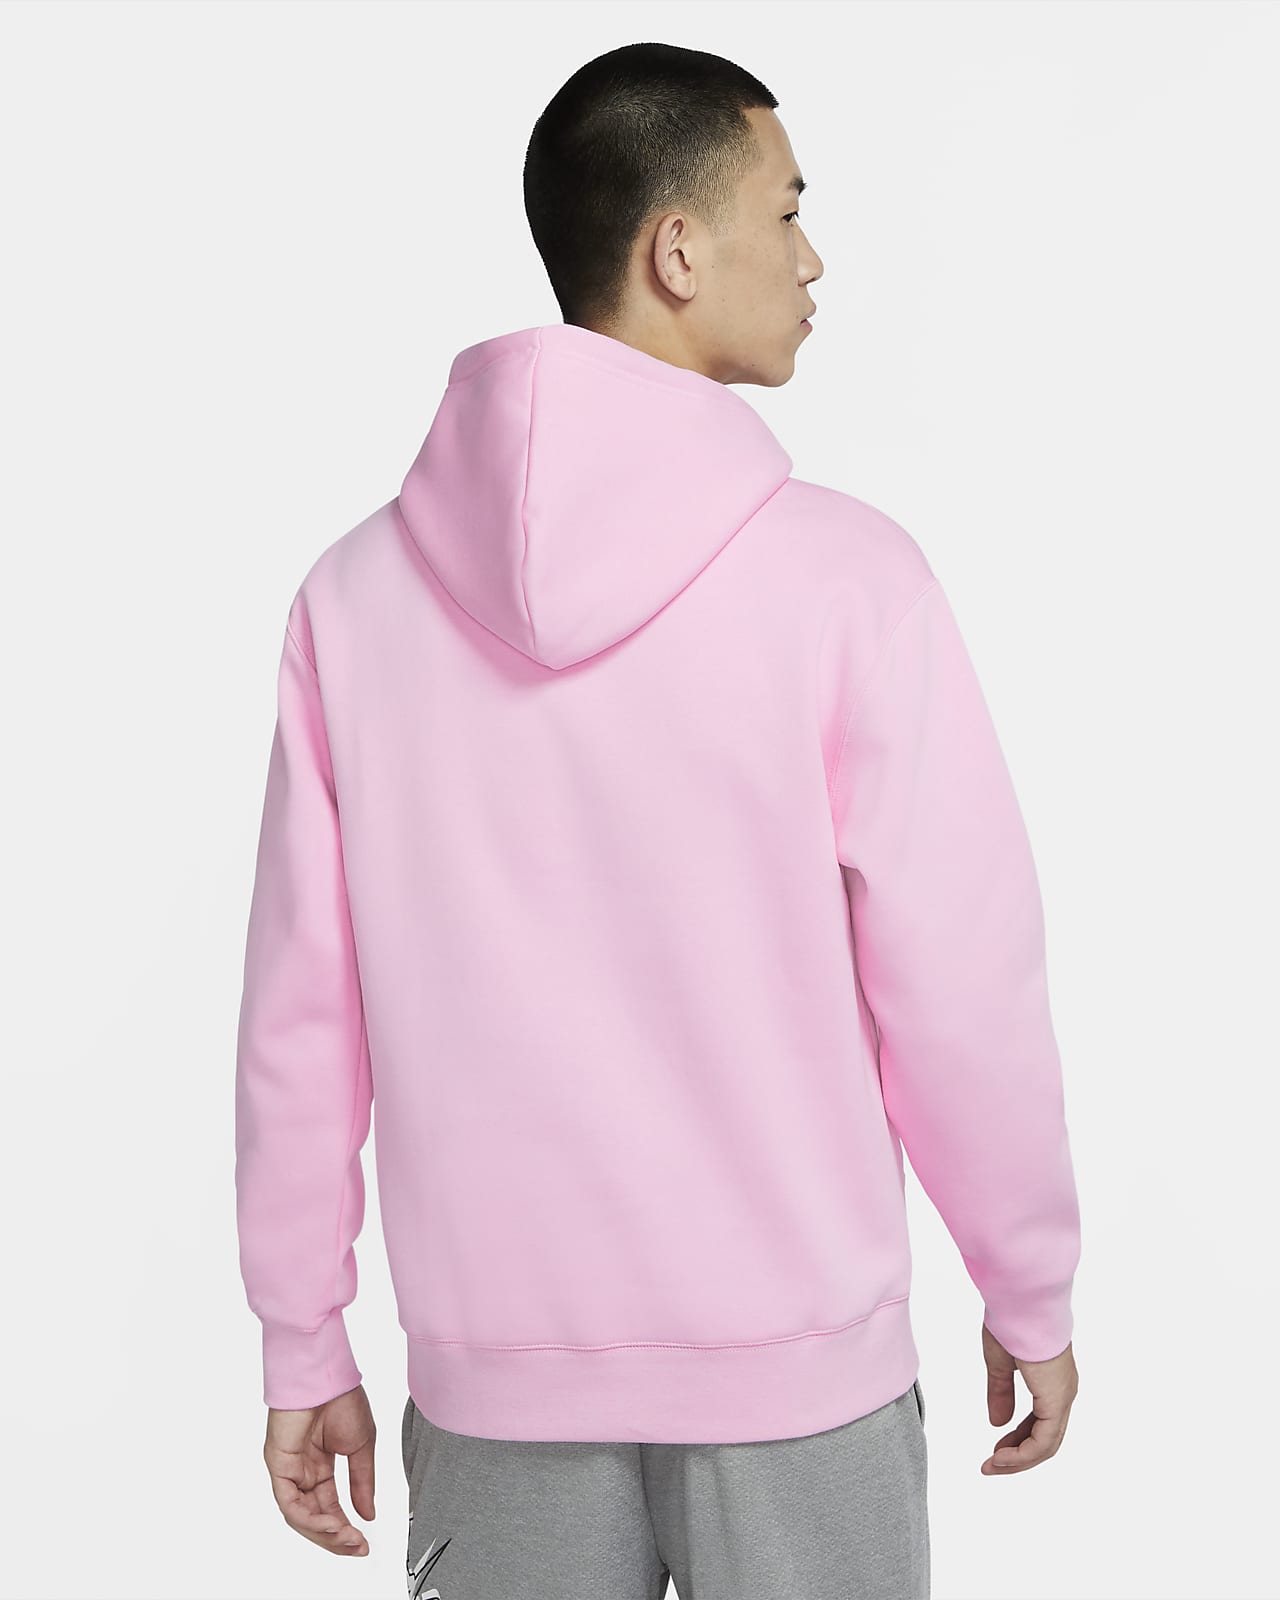 nike pink sweatshirt mens